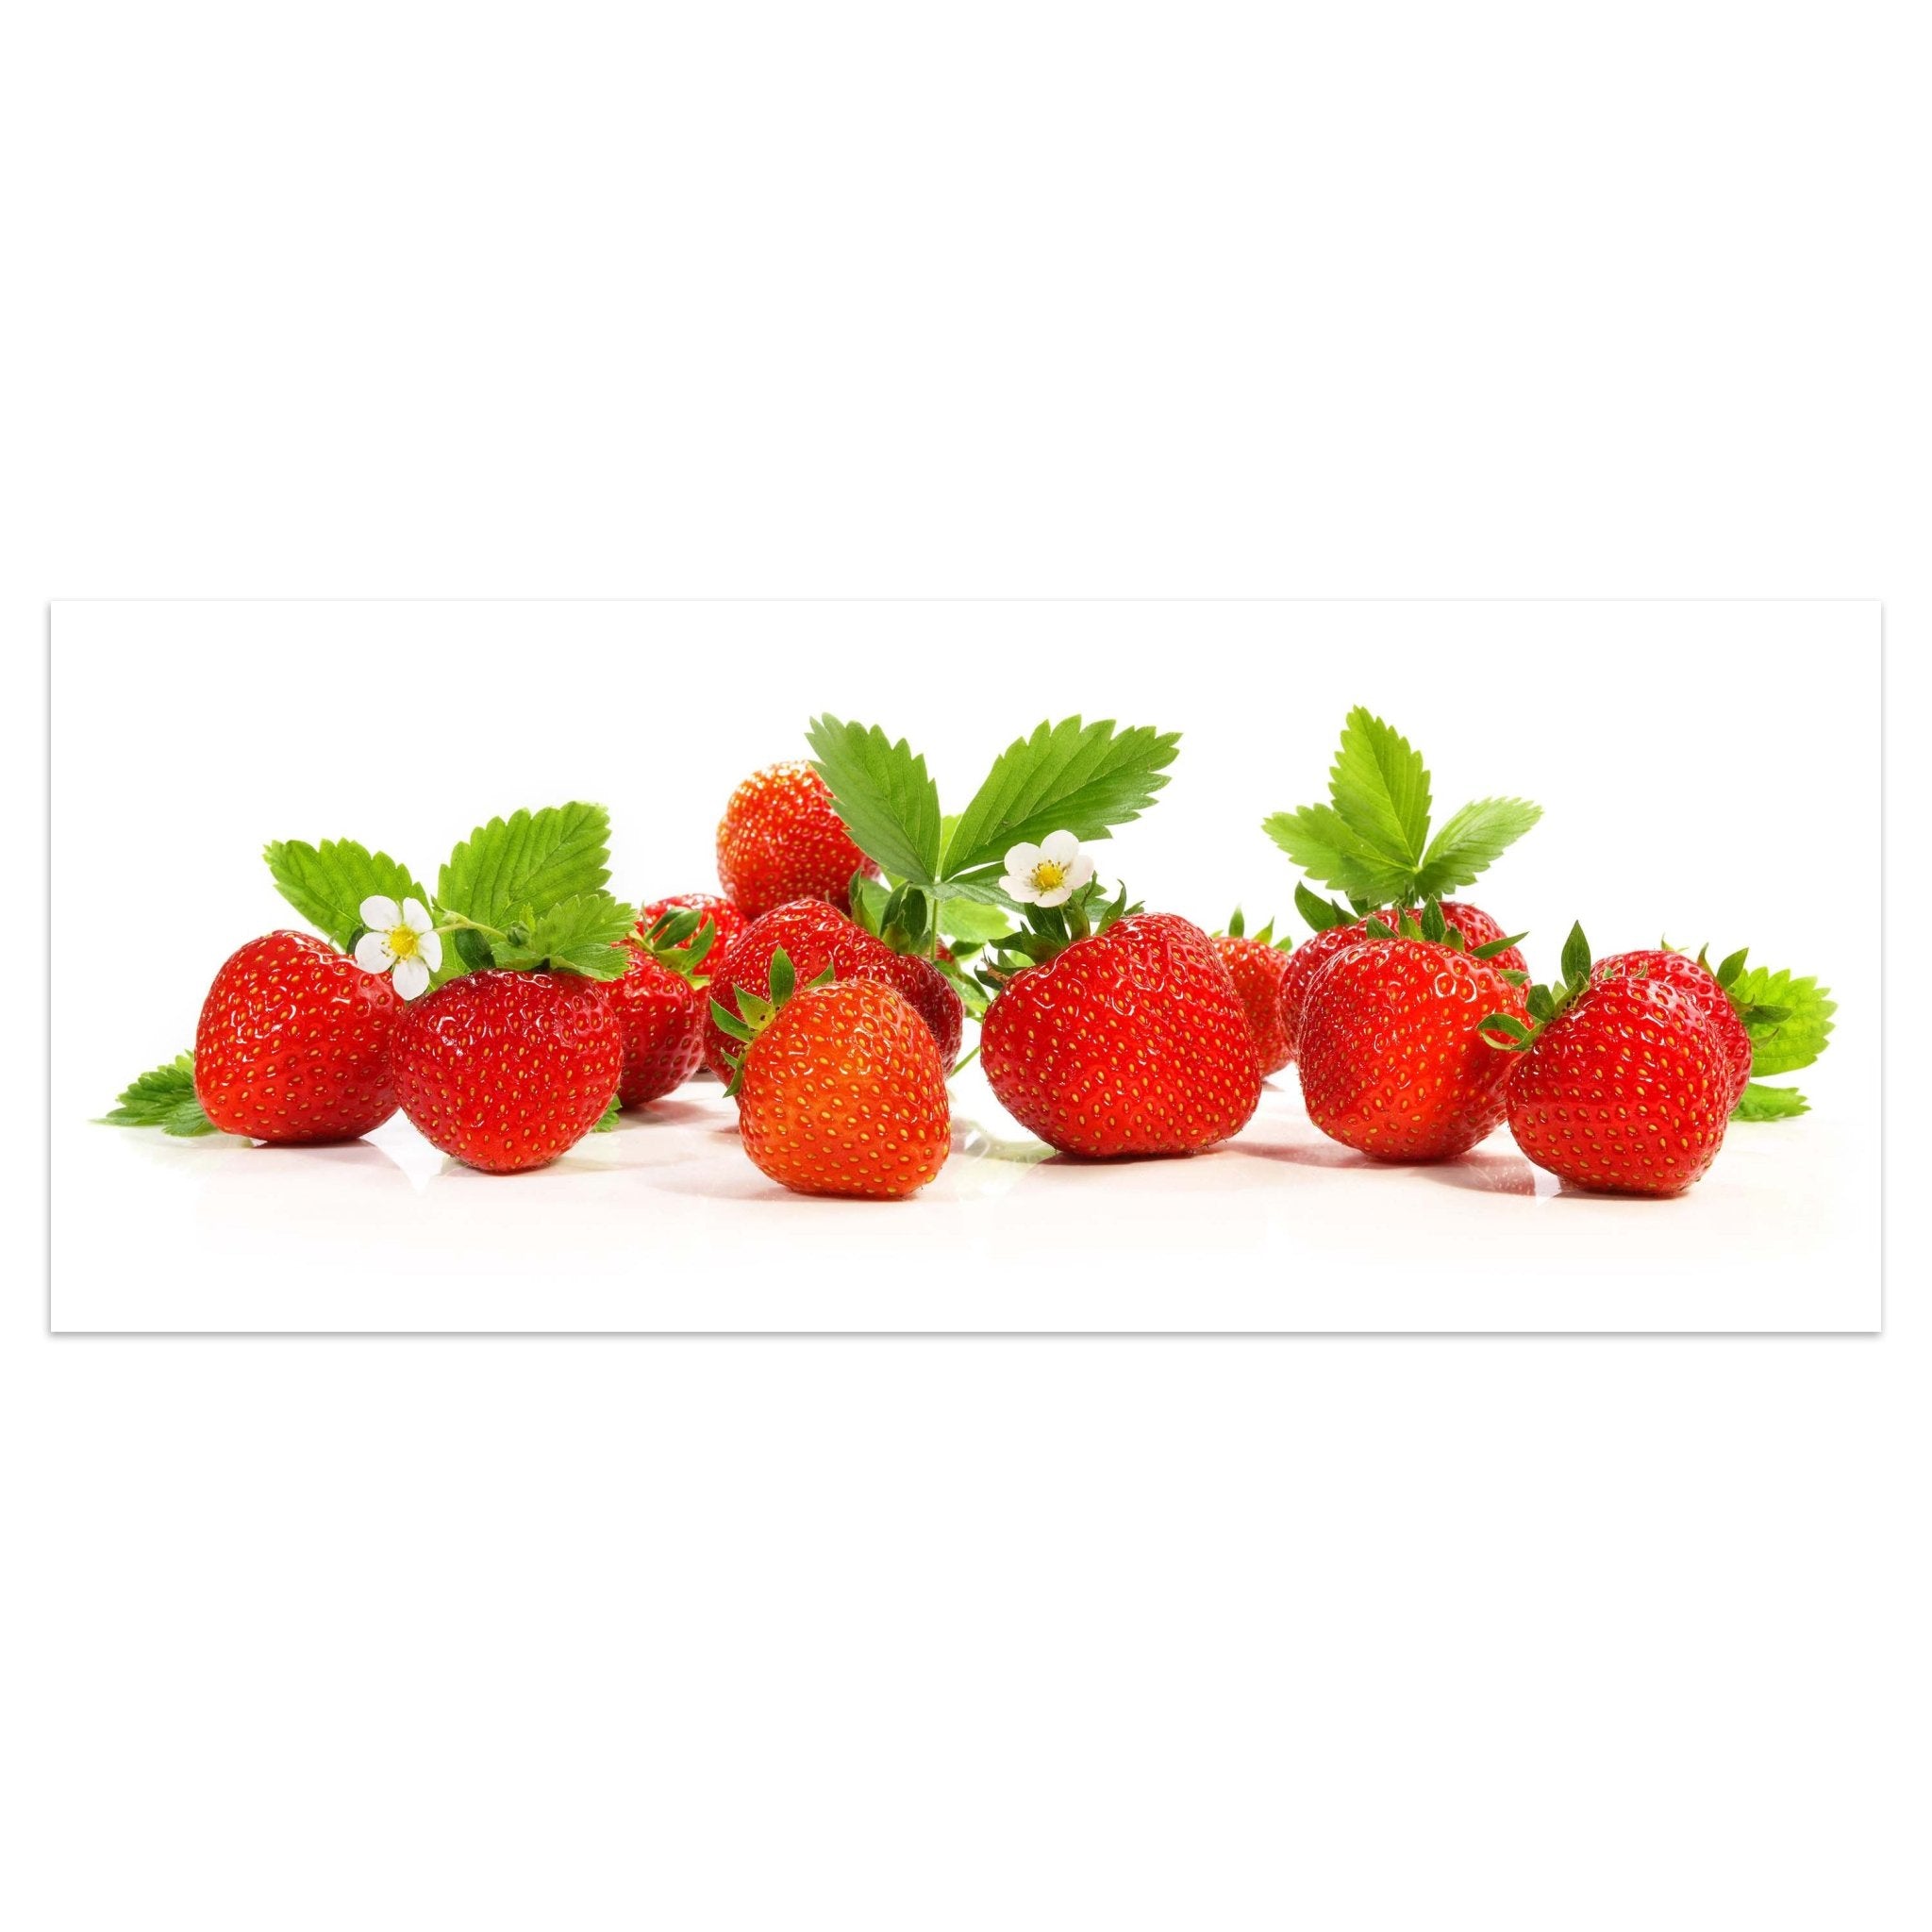 Leinwandbild frische Erdbeeren, Rot, Grün, Obst M1086 kaufen - Bild 1